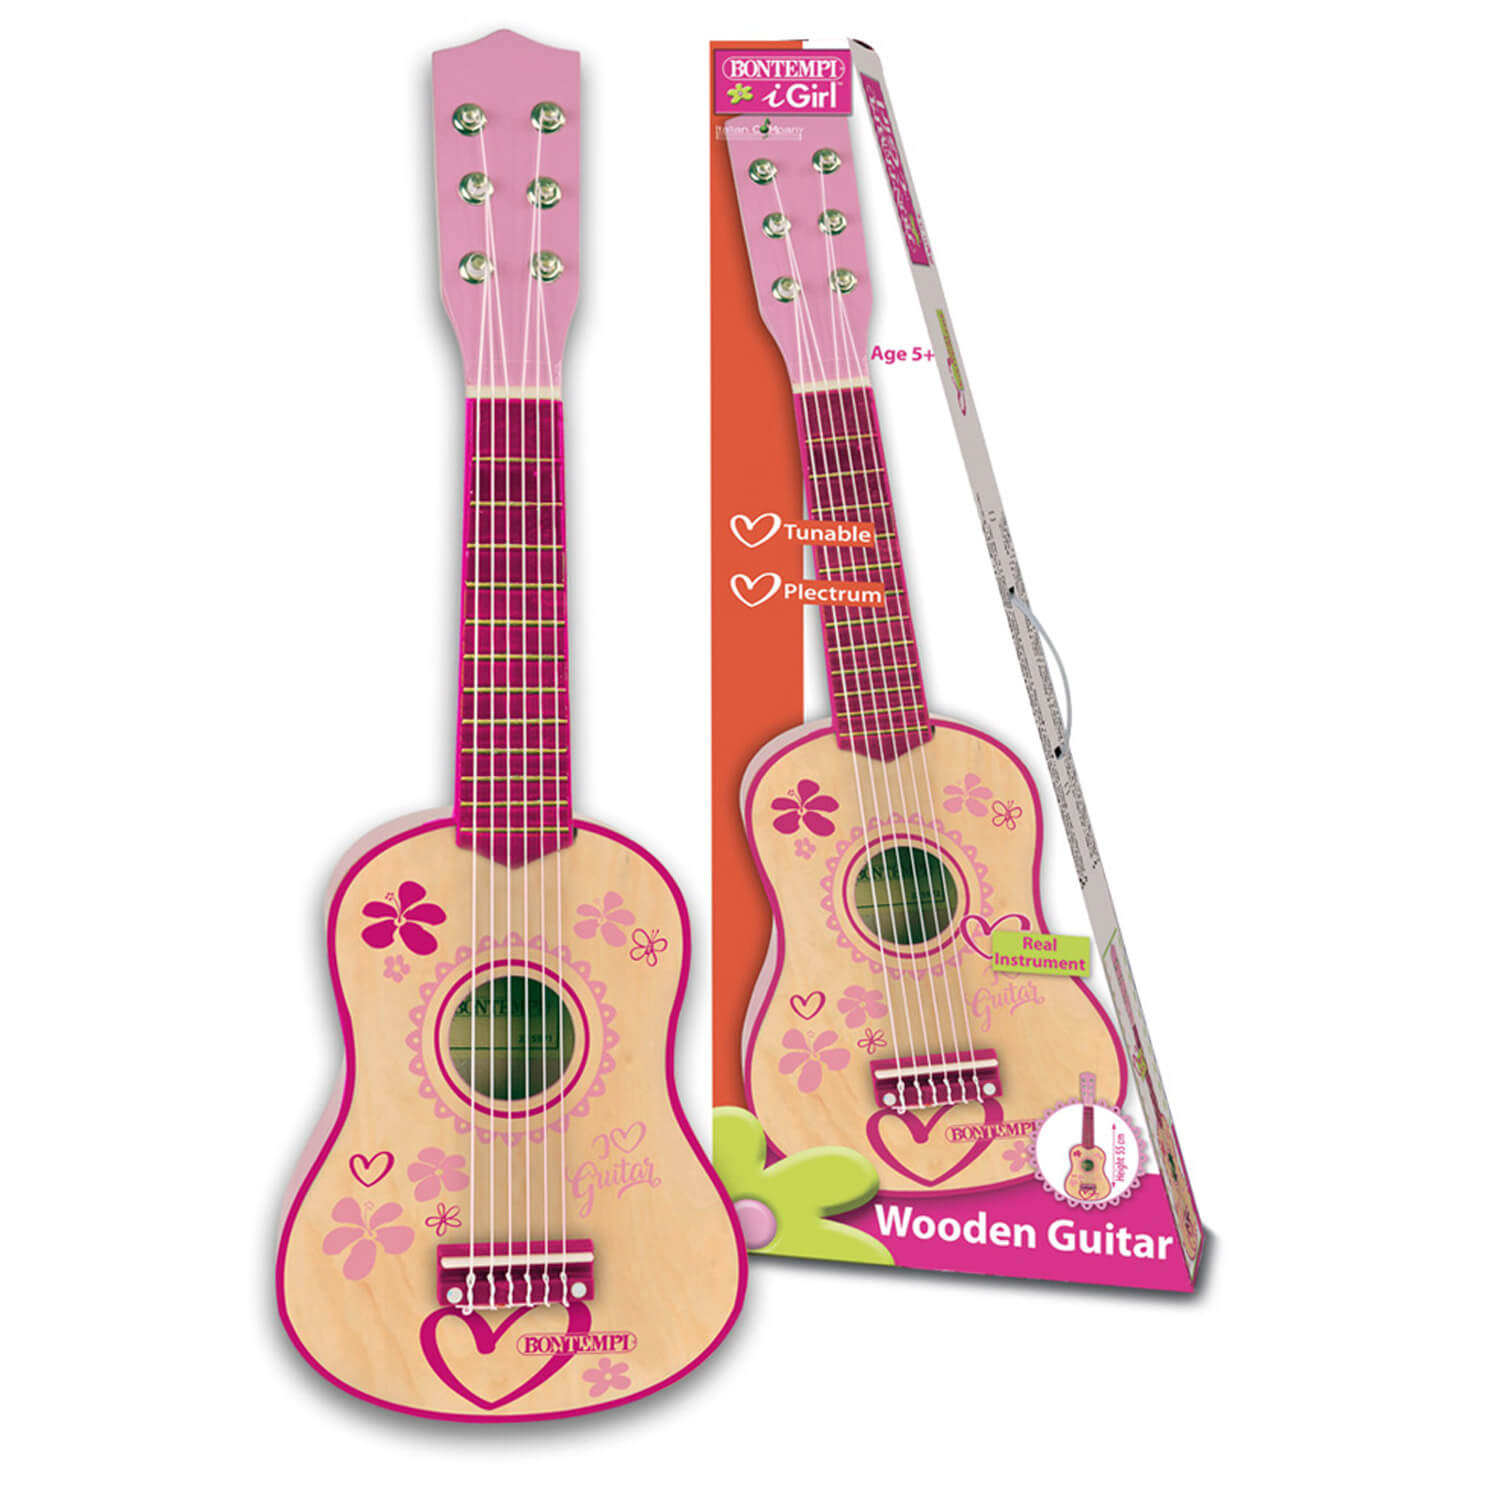 Mini Guitare Classique En Bois Cadeau d'Anniversaire Instruments